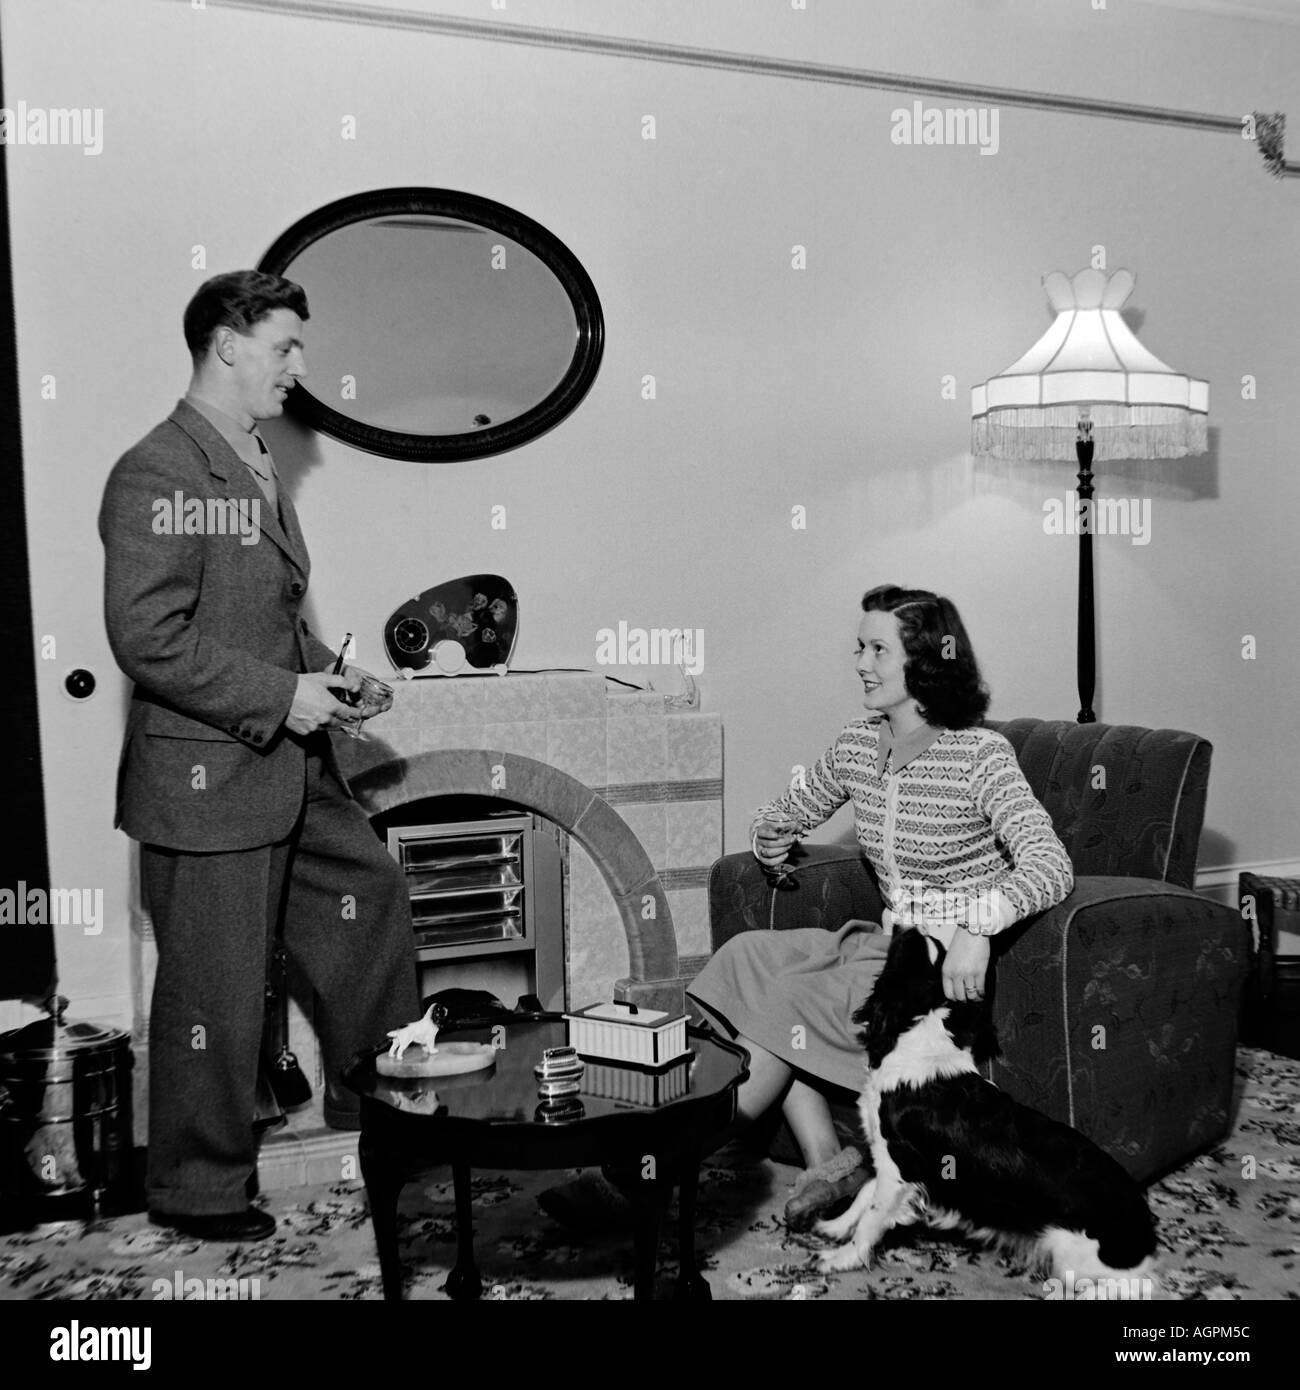 Vecchio VINTAGE IN BIANCO E NERO DI FAMIGLIA fotografia istantanea di coppia sposata nel soggiorno del 1950 circa Foto Stock